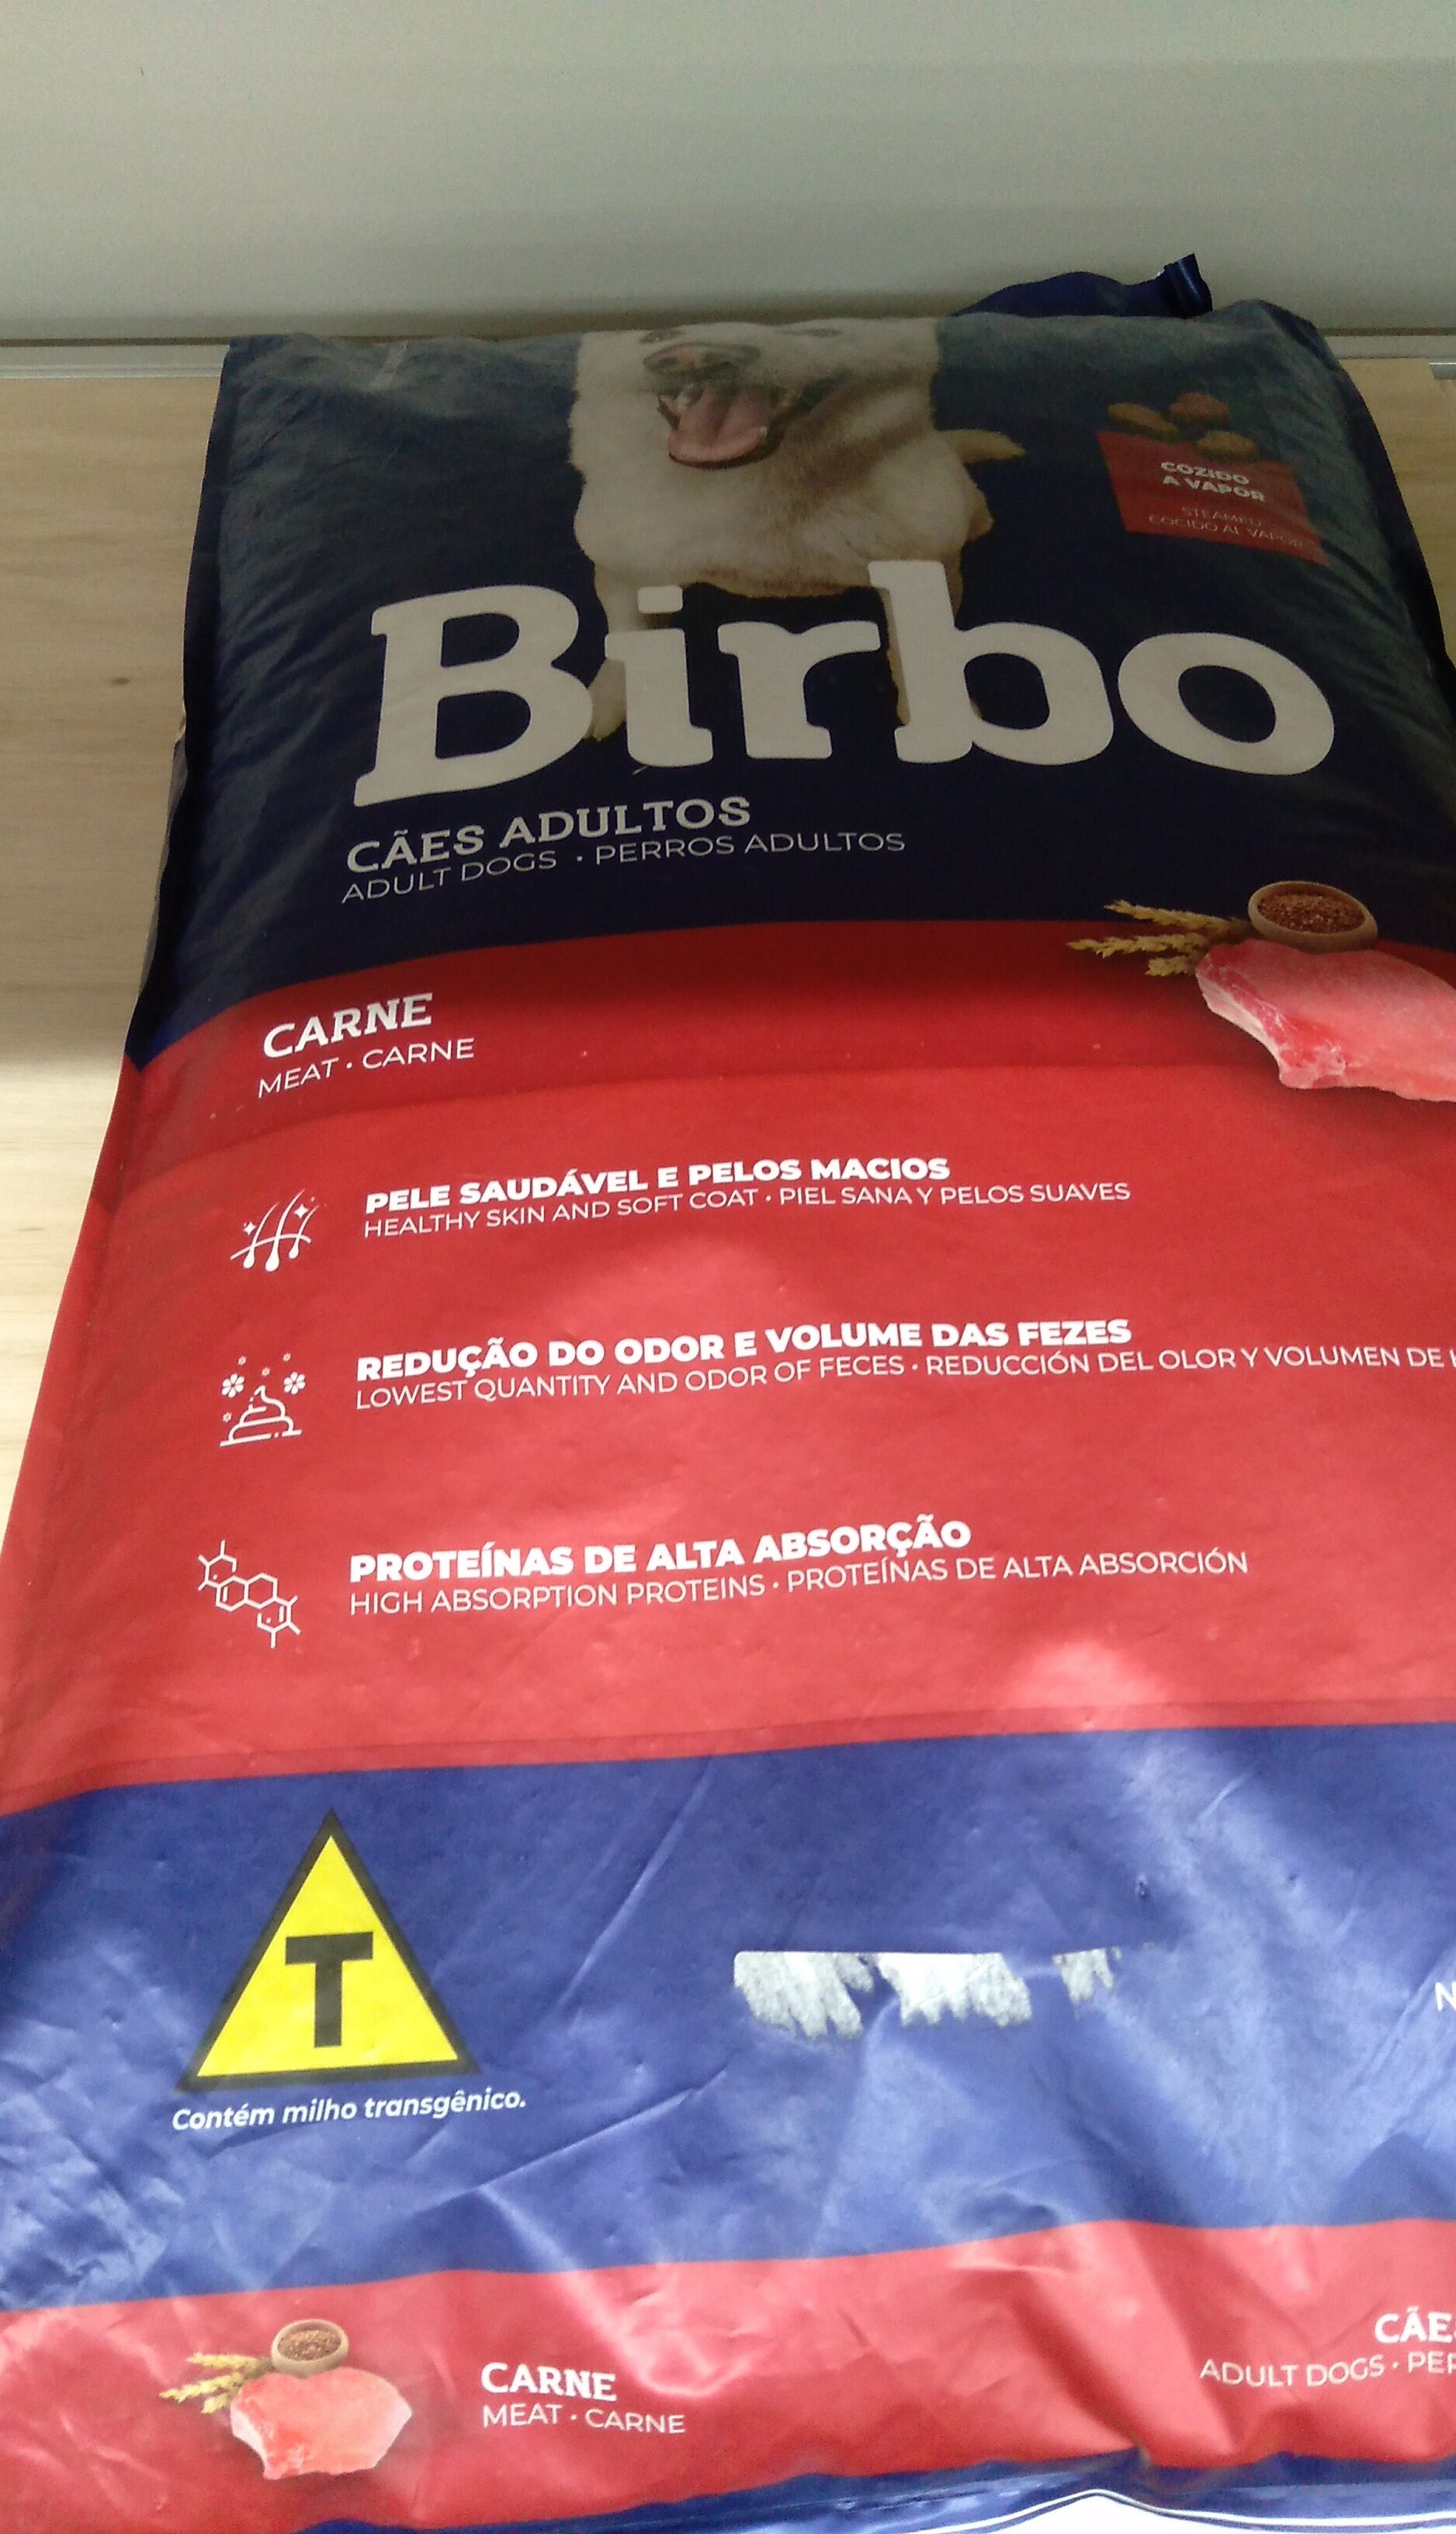 Birbo 25kg Adulto carne - Product - pt